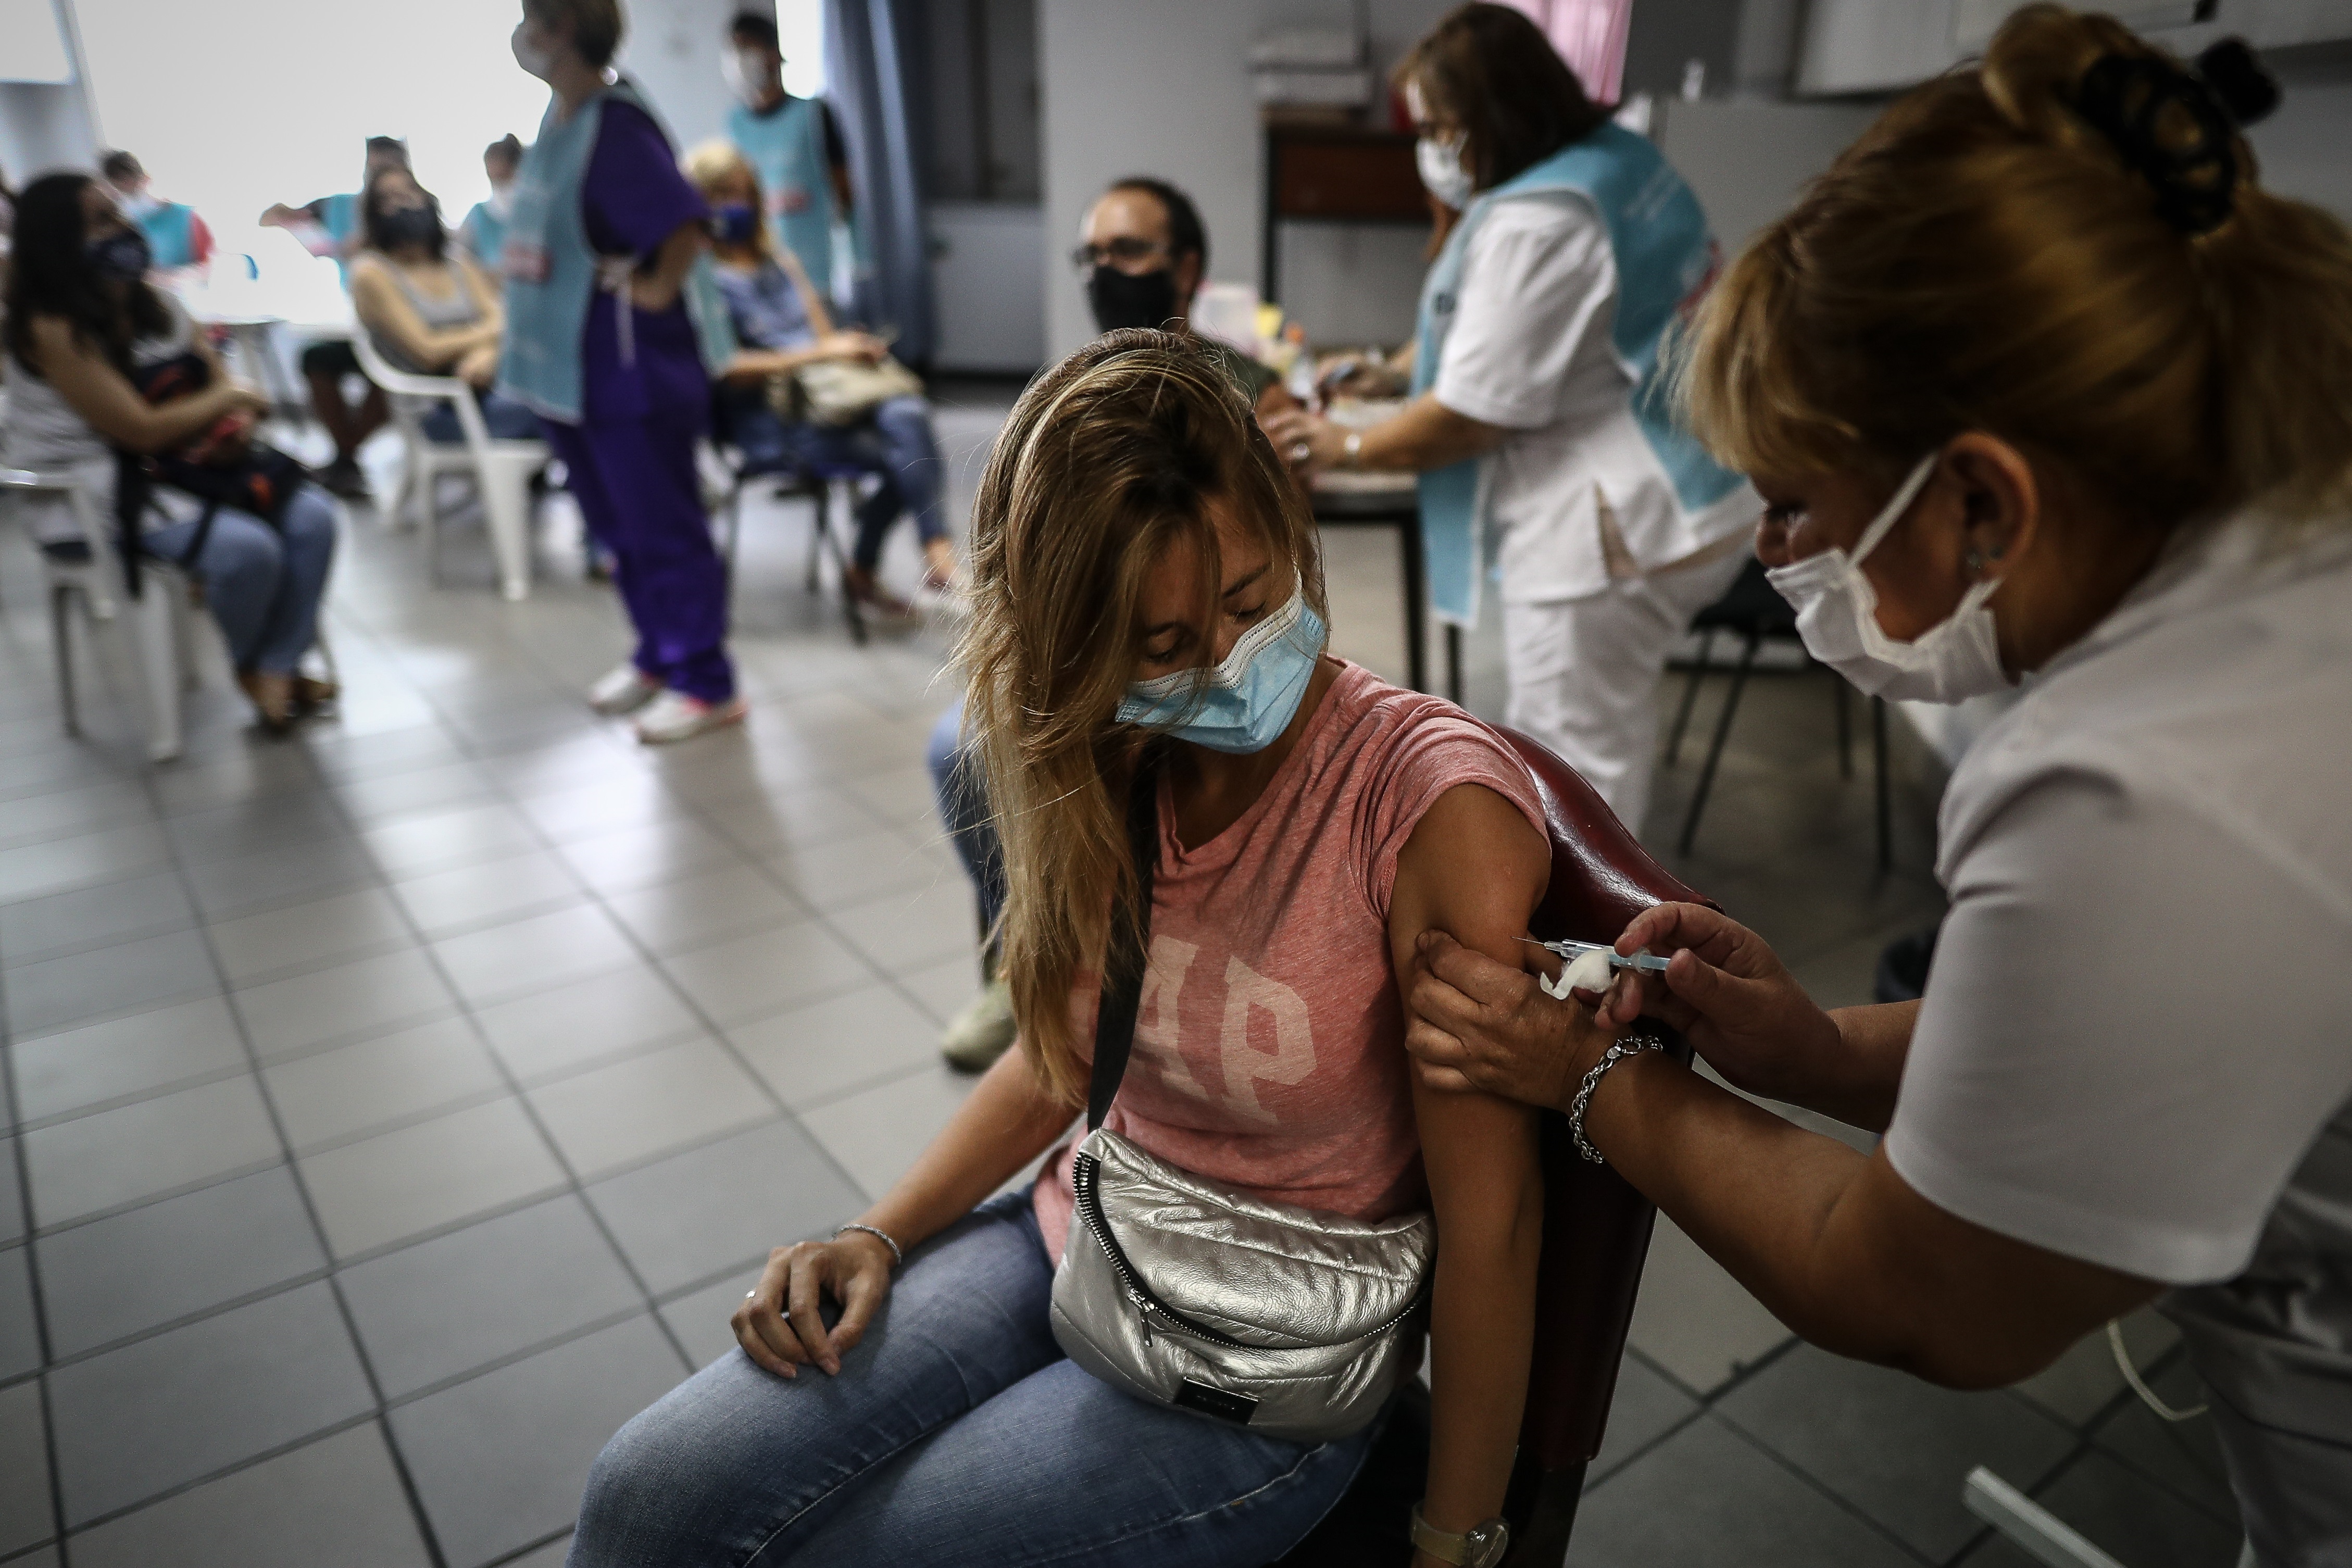 Buenos Aires, 27 may (EFE).- Argentina reportó este jueves un nuevo récord de 41.080 nuevos casos del coronavirus SARS-CoV-2, con lo que el número total de positivos ascendió a 3.663.215, mientras que los fallecimientos se elevaron a 76.135, tras ser notificadas 551 muertes en las últimas 24 horas.